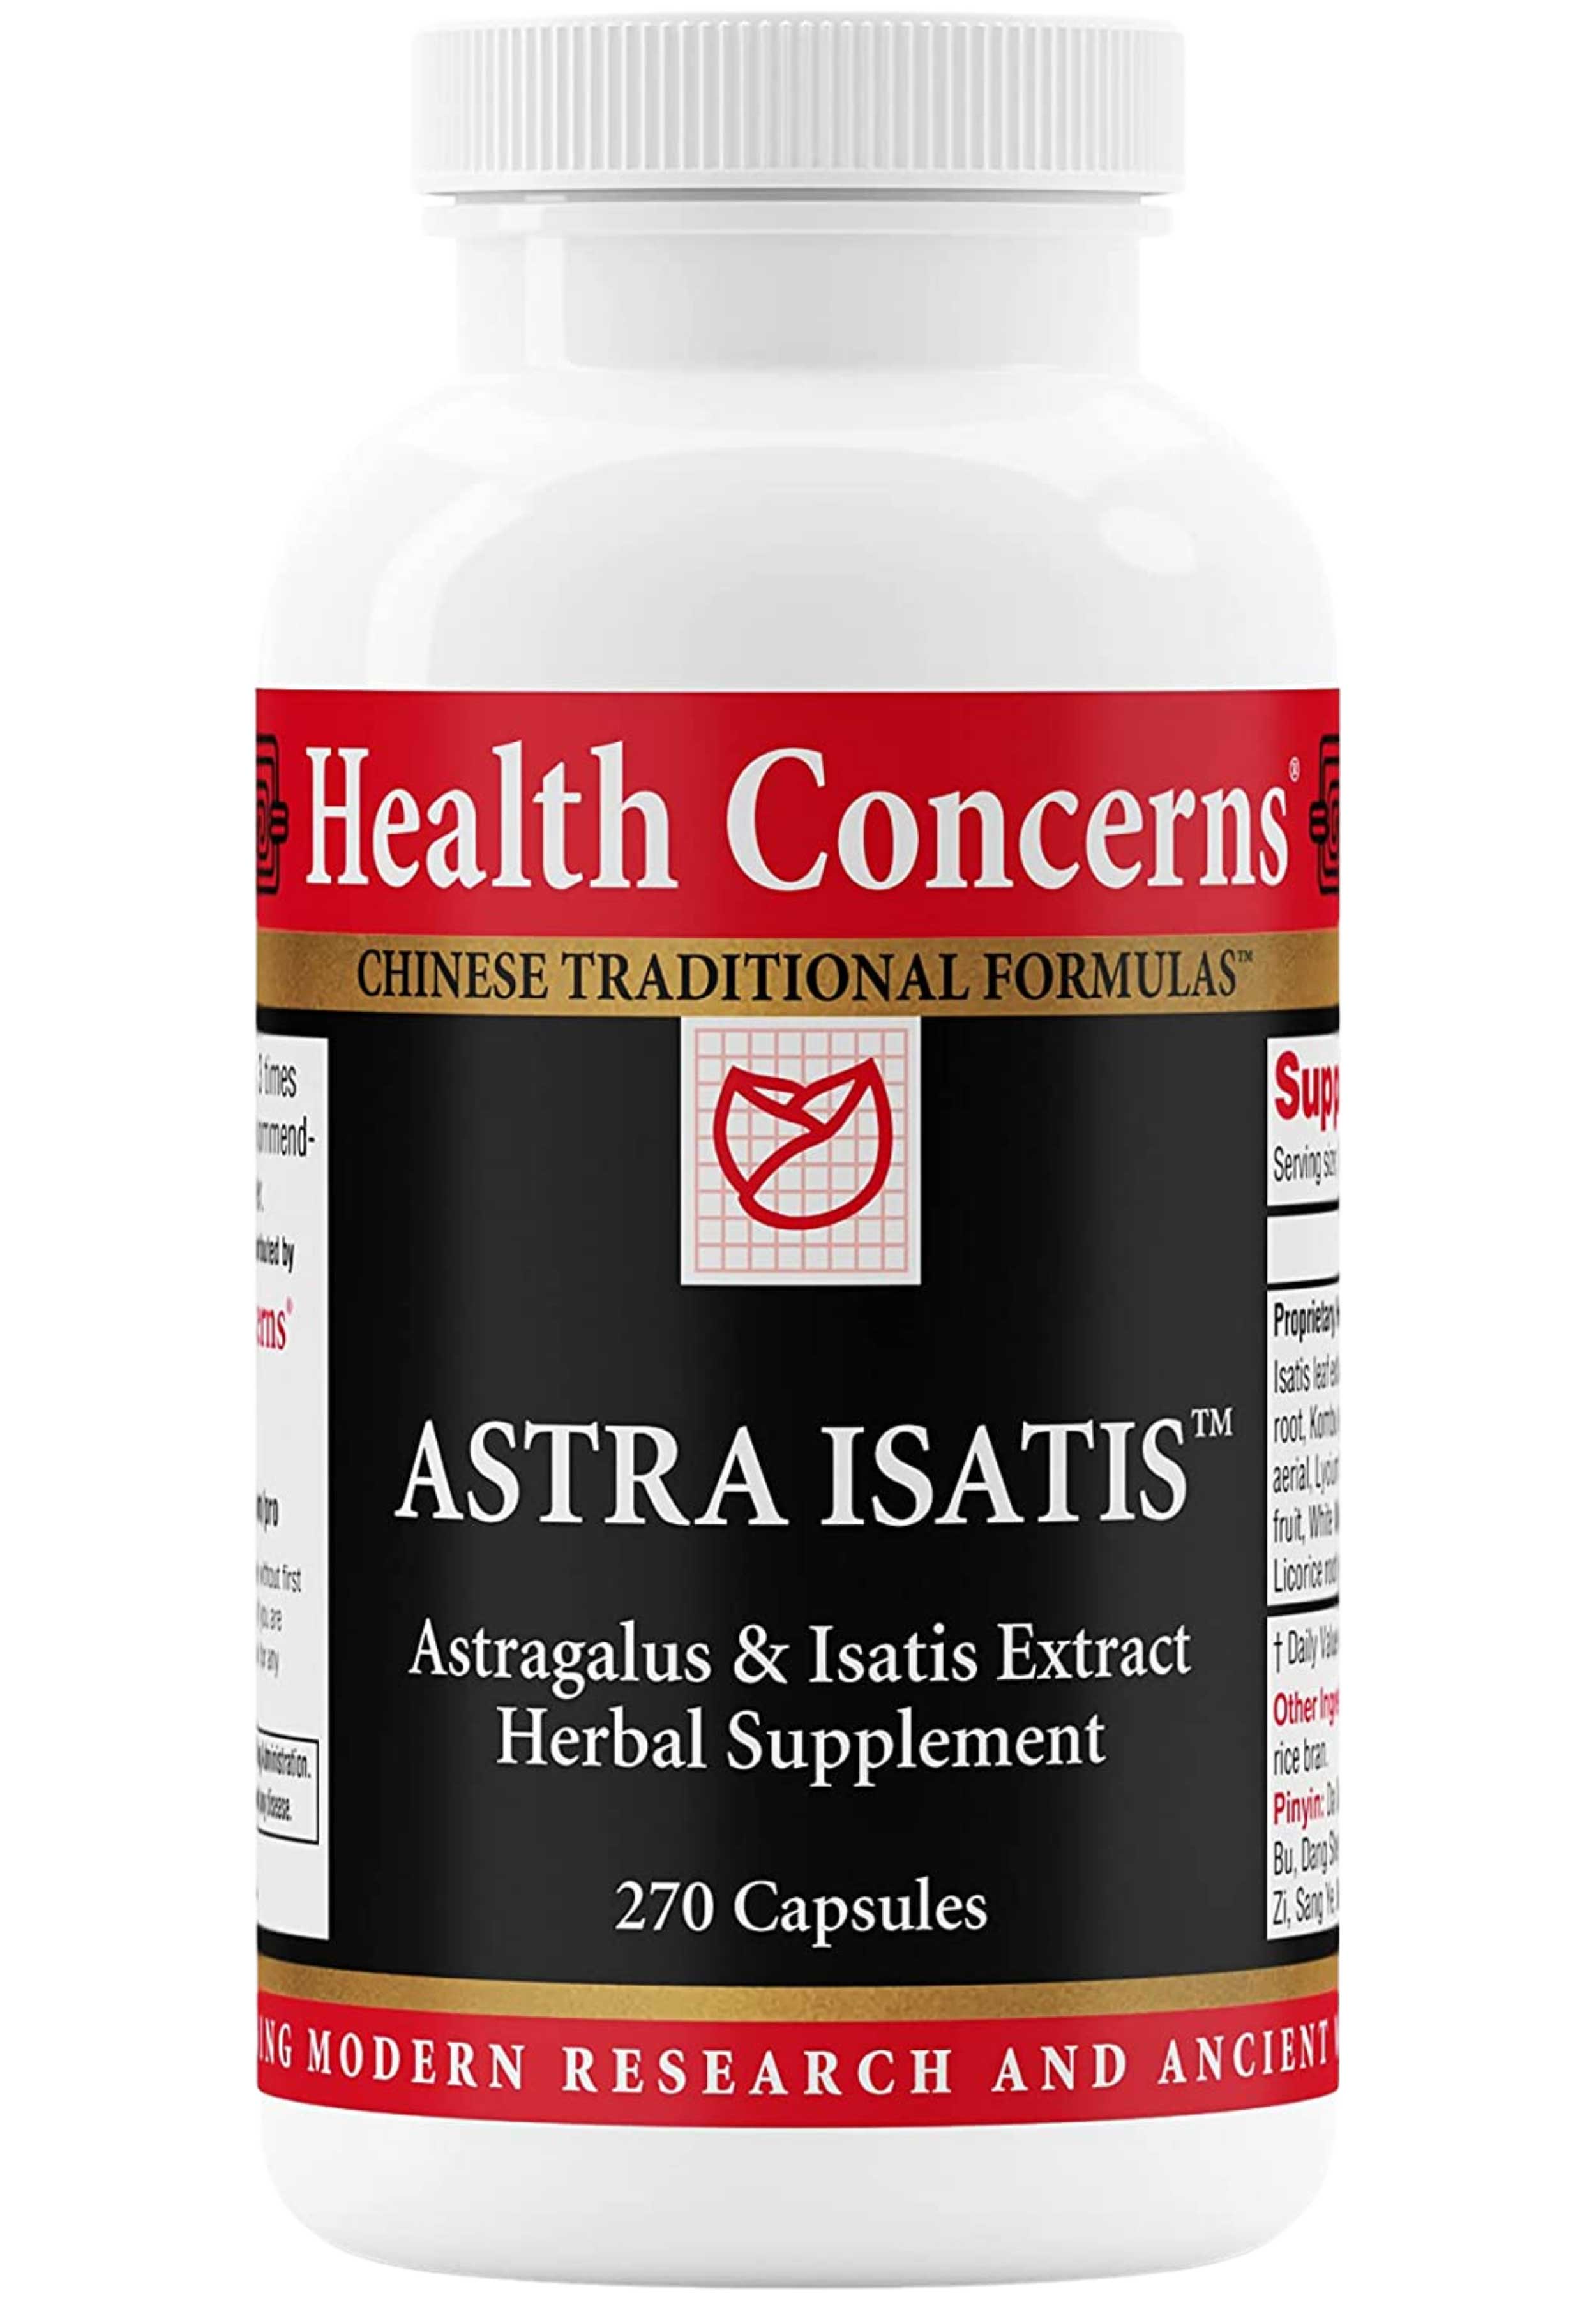 Health Concerns Astra Isatis